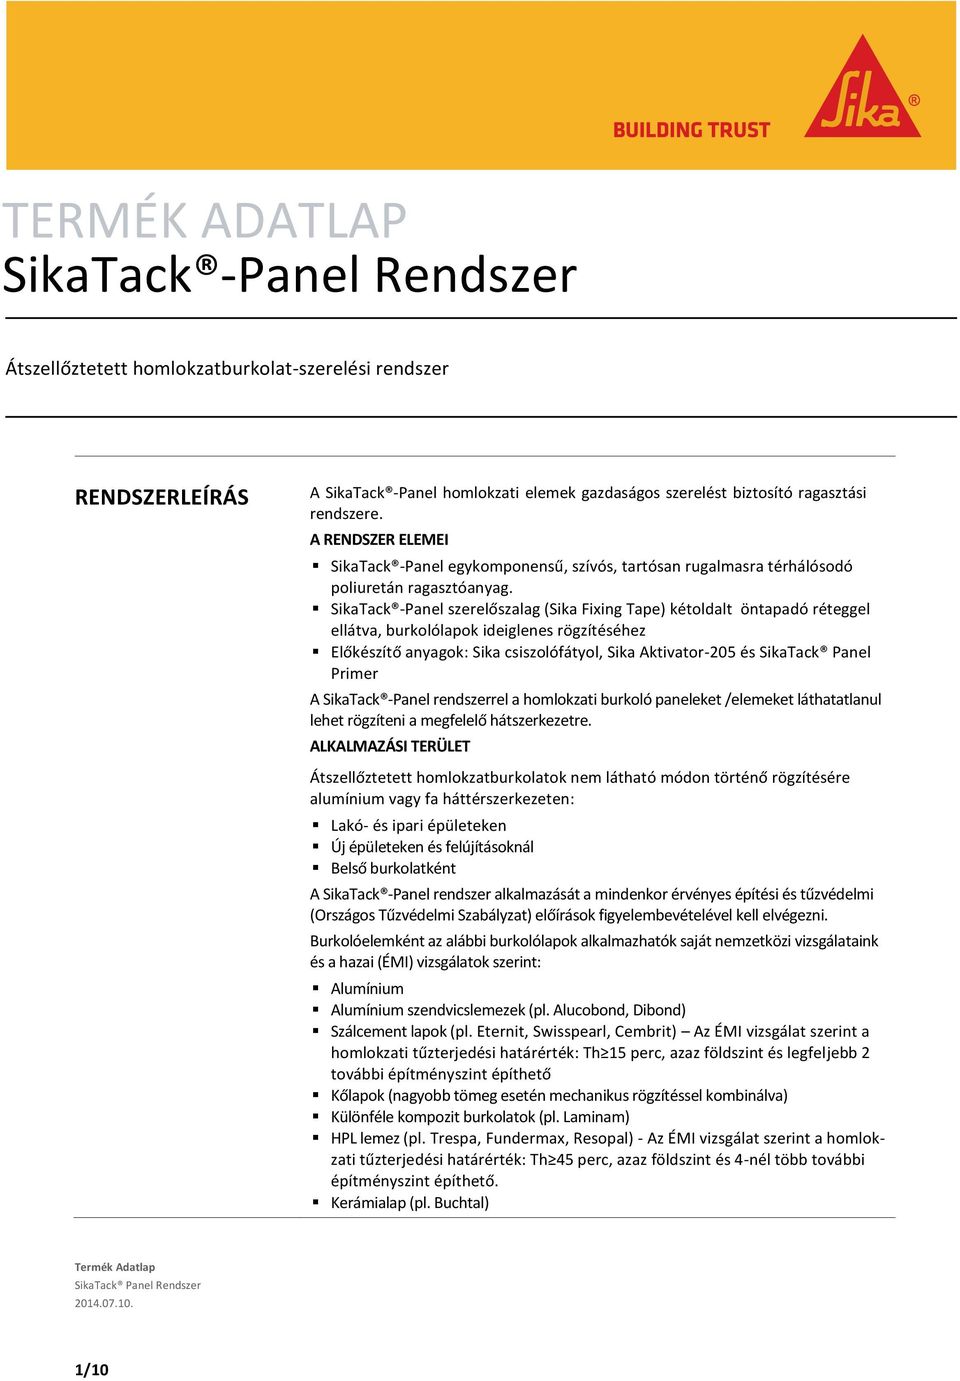 SikaTack -Panel szerelőszalag (Sika Fixing Tape) kétoldalt öntapadó réteggel ellátva, burkolólapok ideiglenes rögzítéséhez Előkészítő anyagok: Sika csiszolófátyol, Sika Aktivator-205 és SikaTack